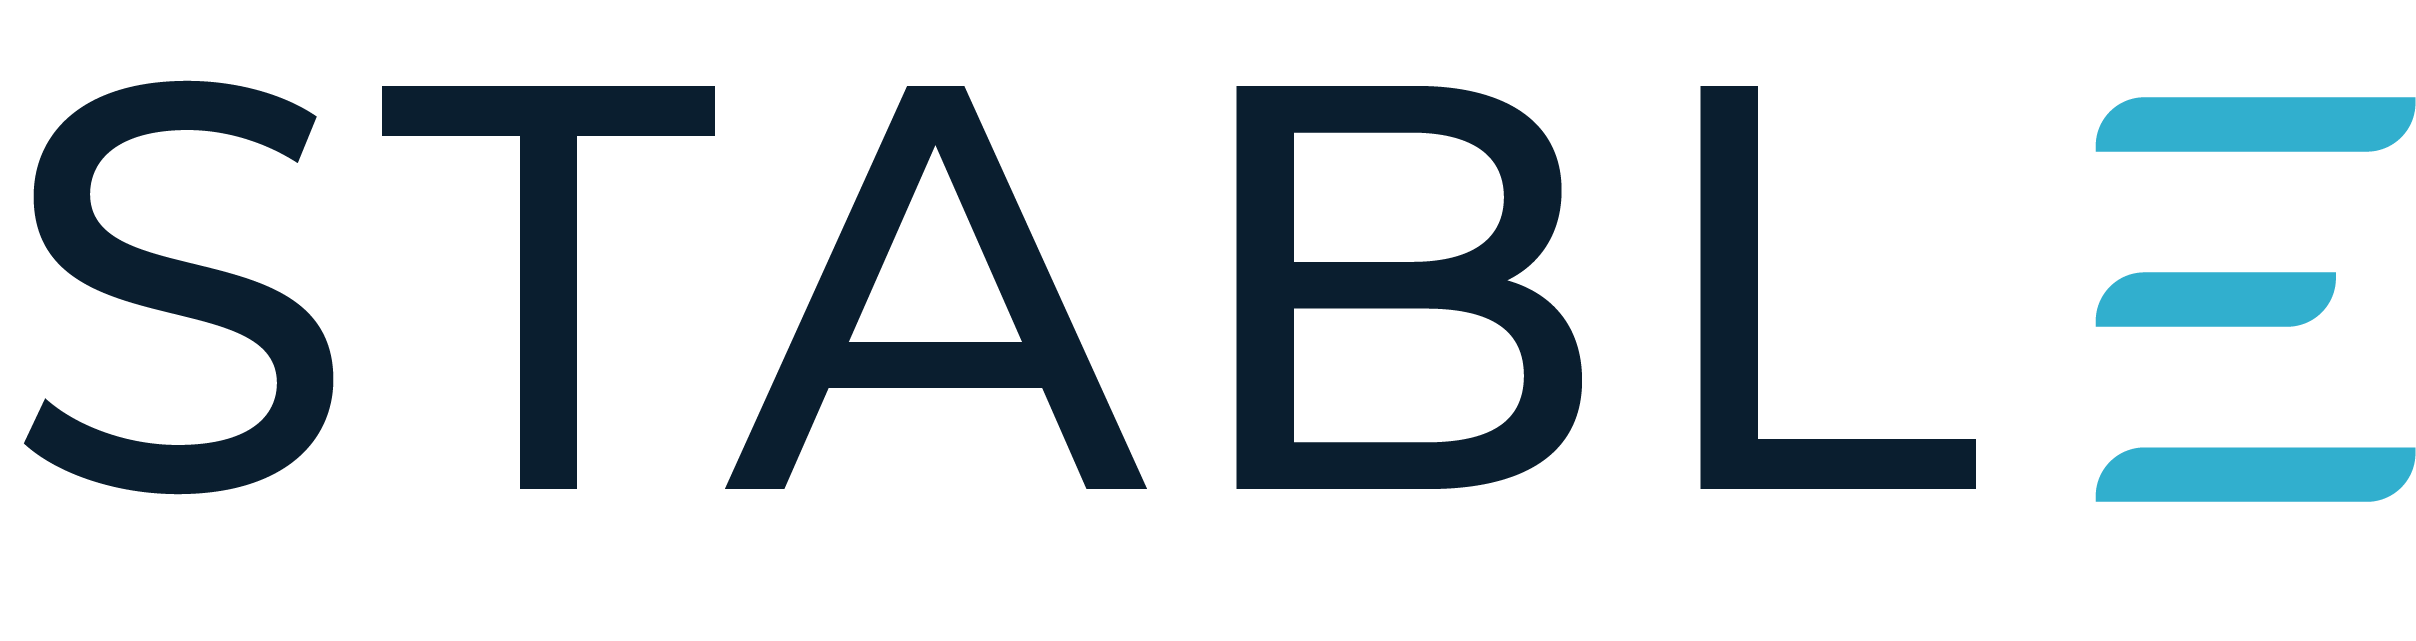 Secondary logo blue